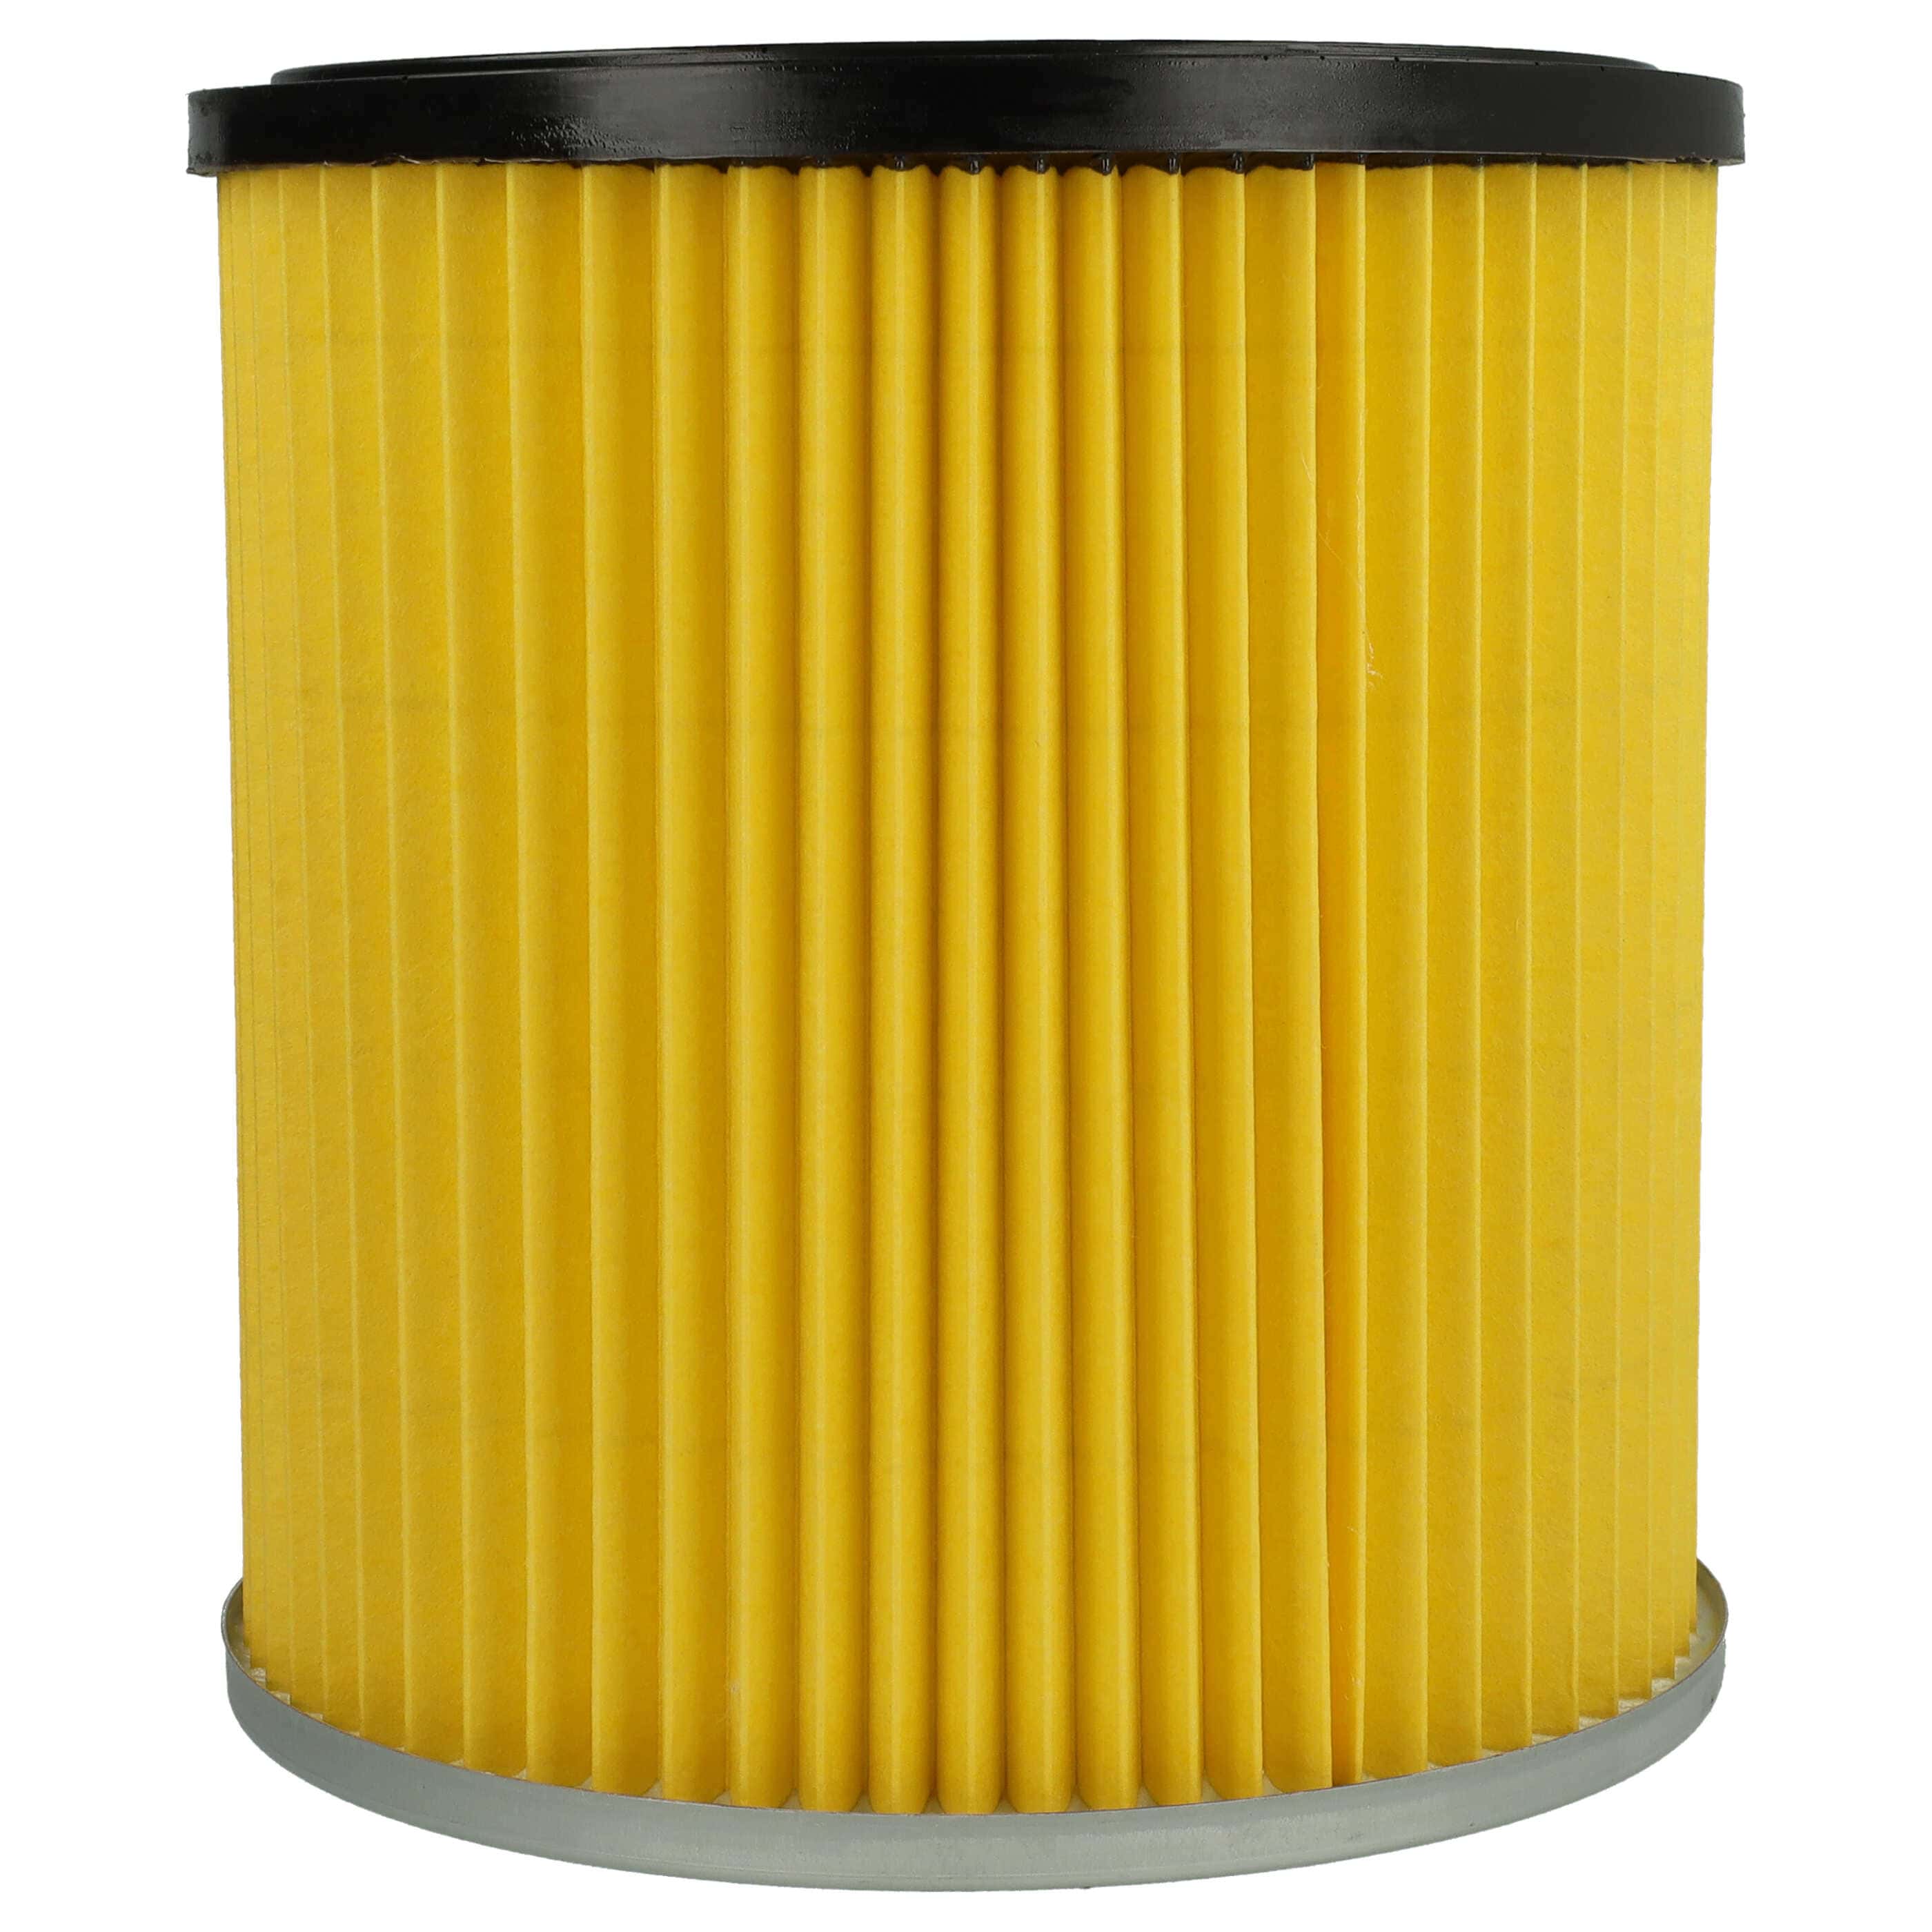 Filtr do odkurzacza Dewalt zamiennik Kärcher 6.414-354.0, 6.414-335.0 - wkład filtracyjny, żółty